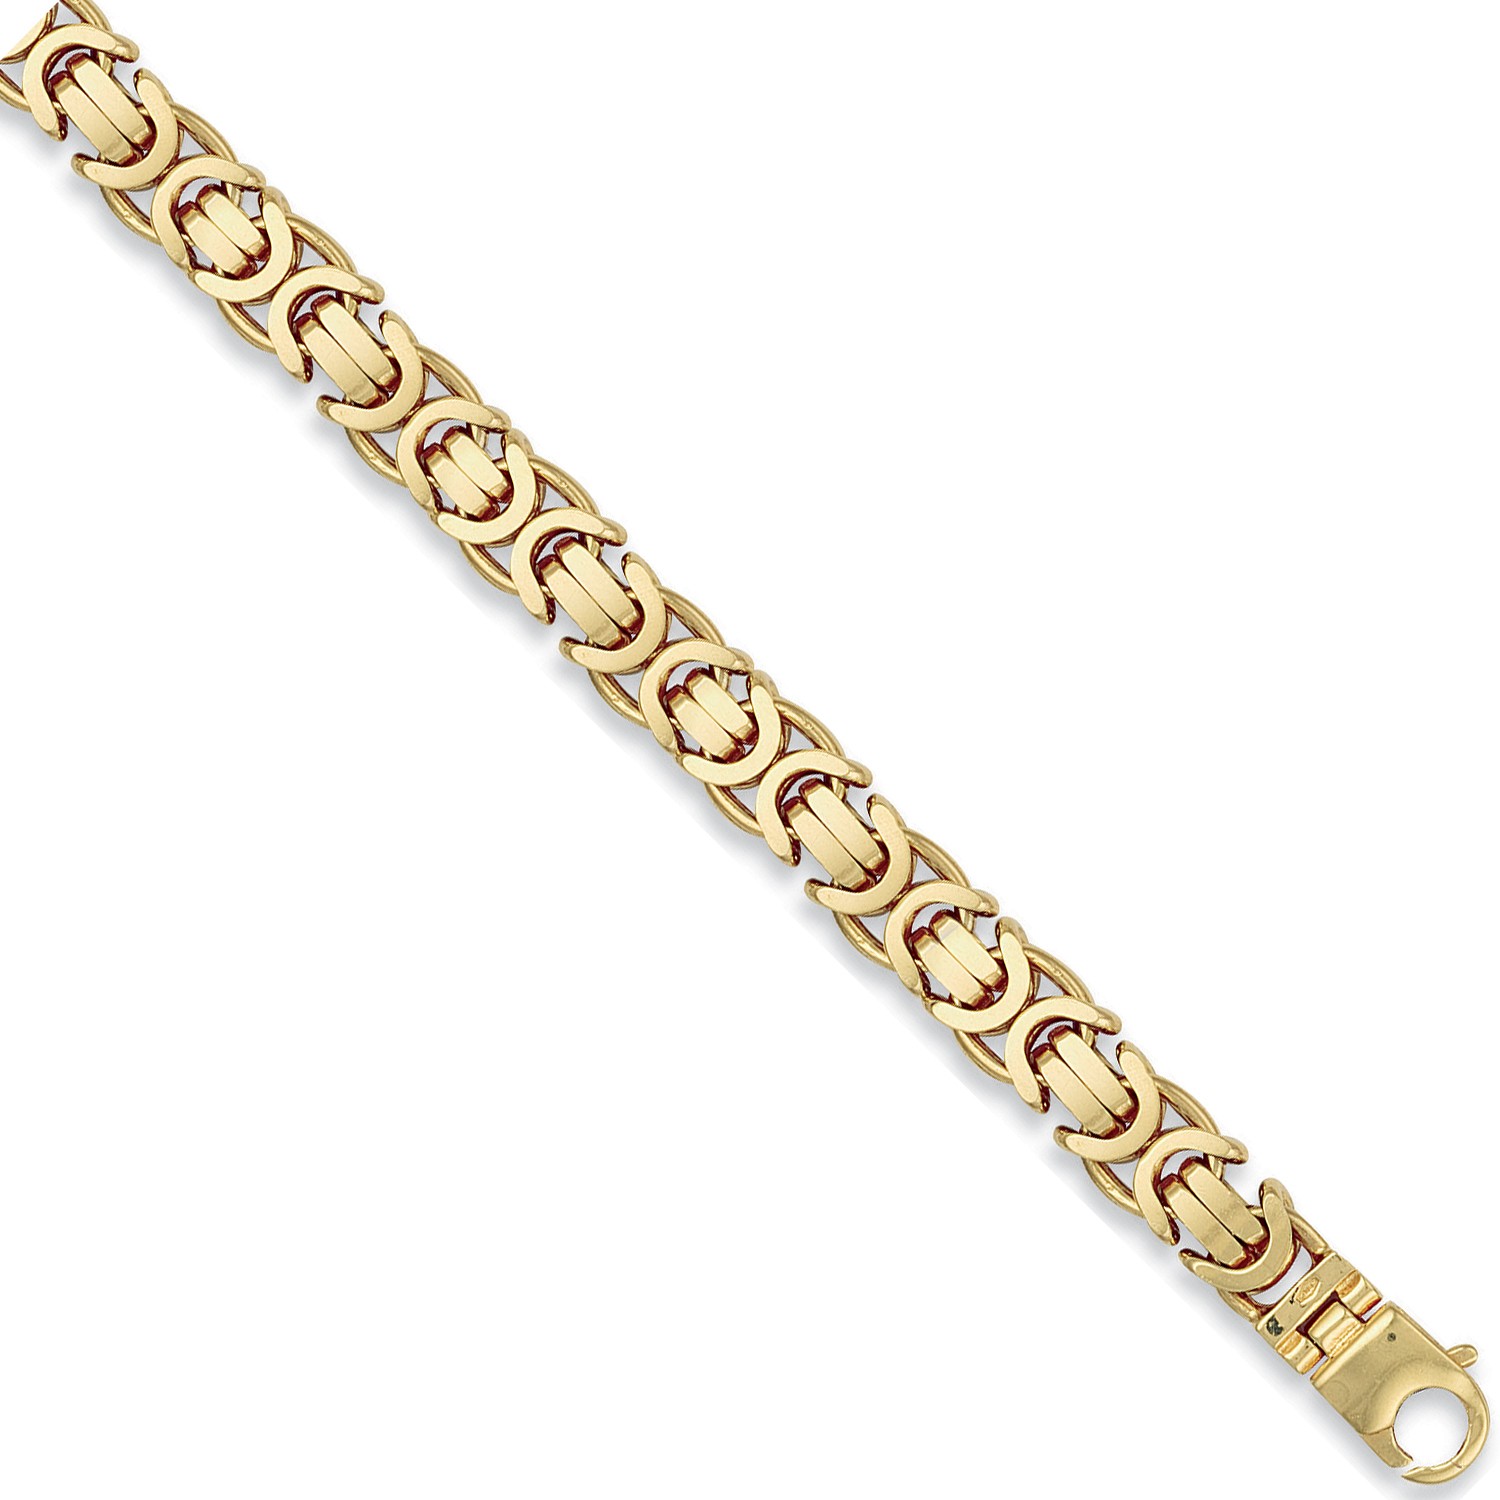 Y/G 11.5mm Byzantine Chain